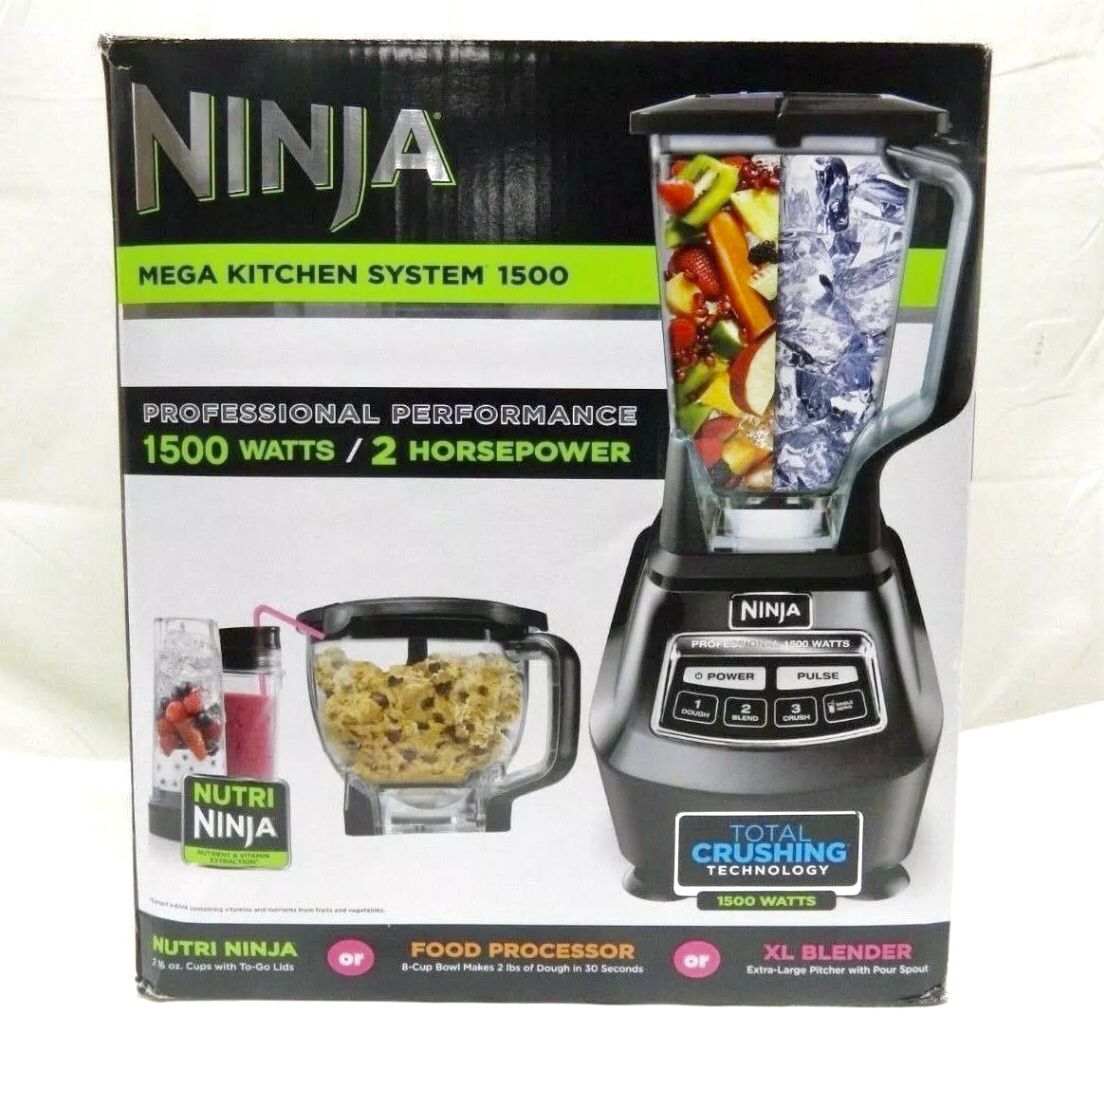 NINJA MEGA KITCHEN SYSTEM 1500, NUTRA NINJA/FOOD PROCESSOR/XL